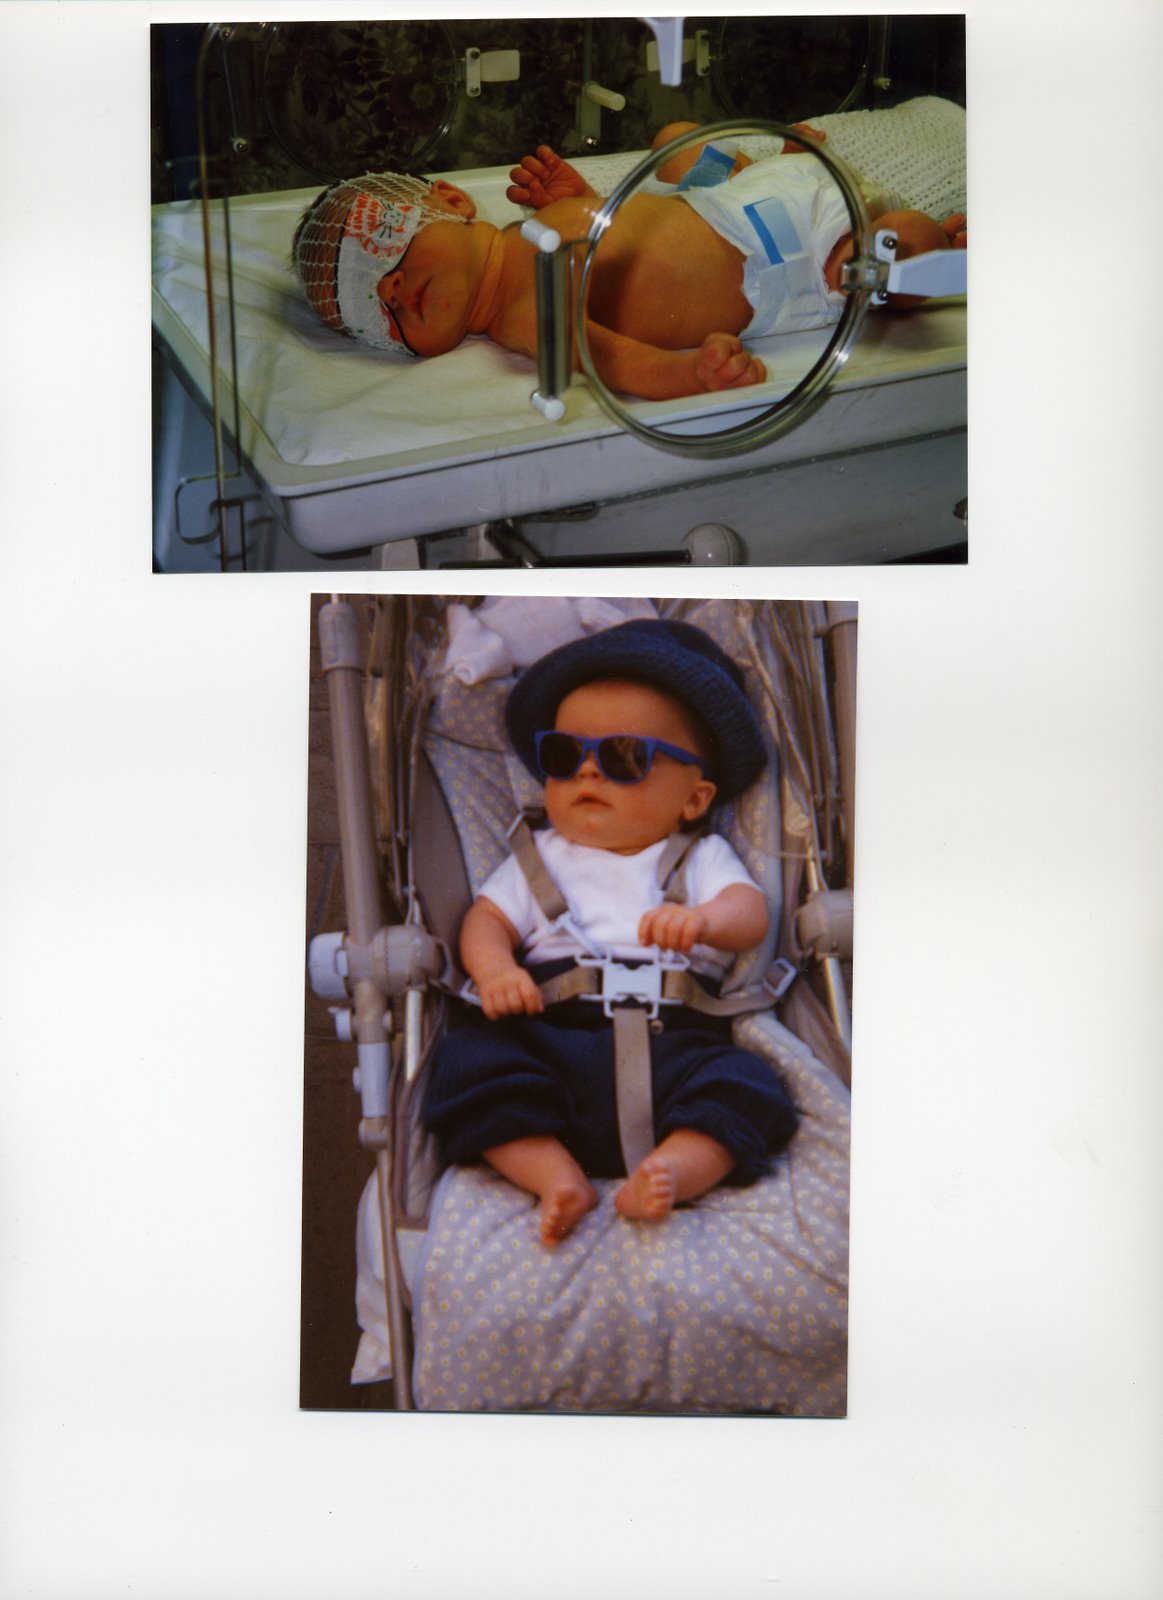 [Dillon+birth+20033.jpg]